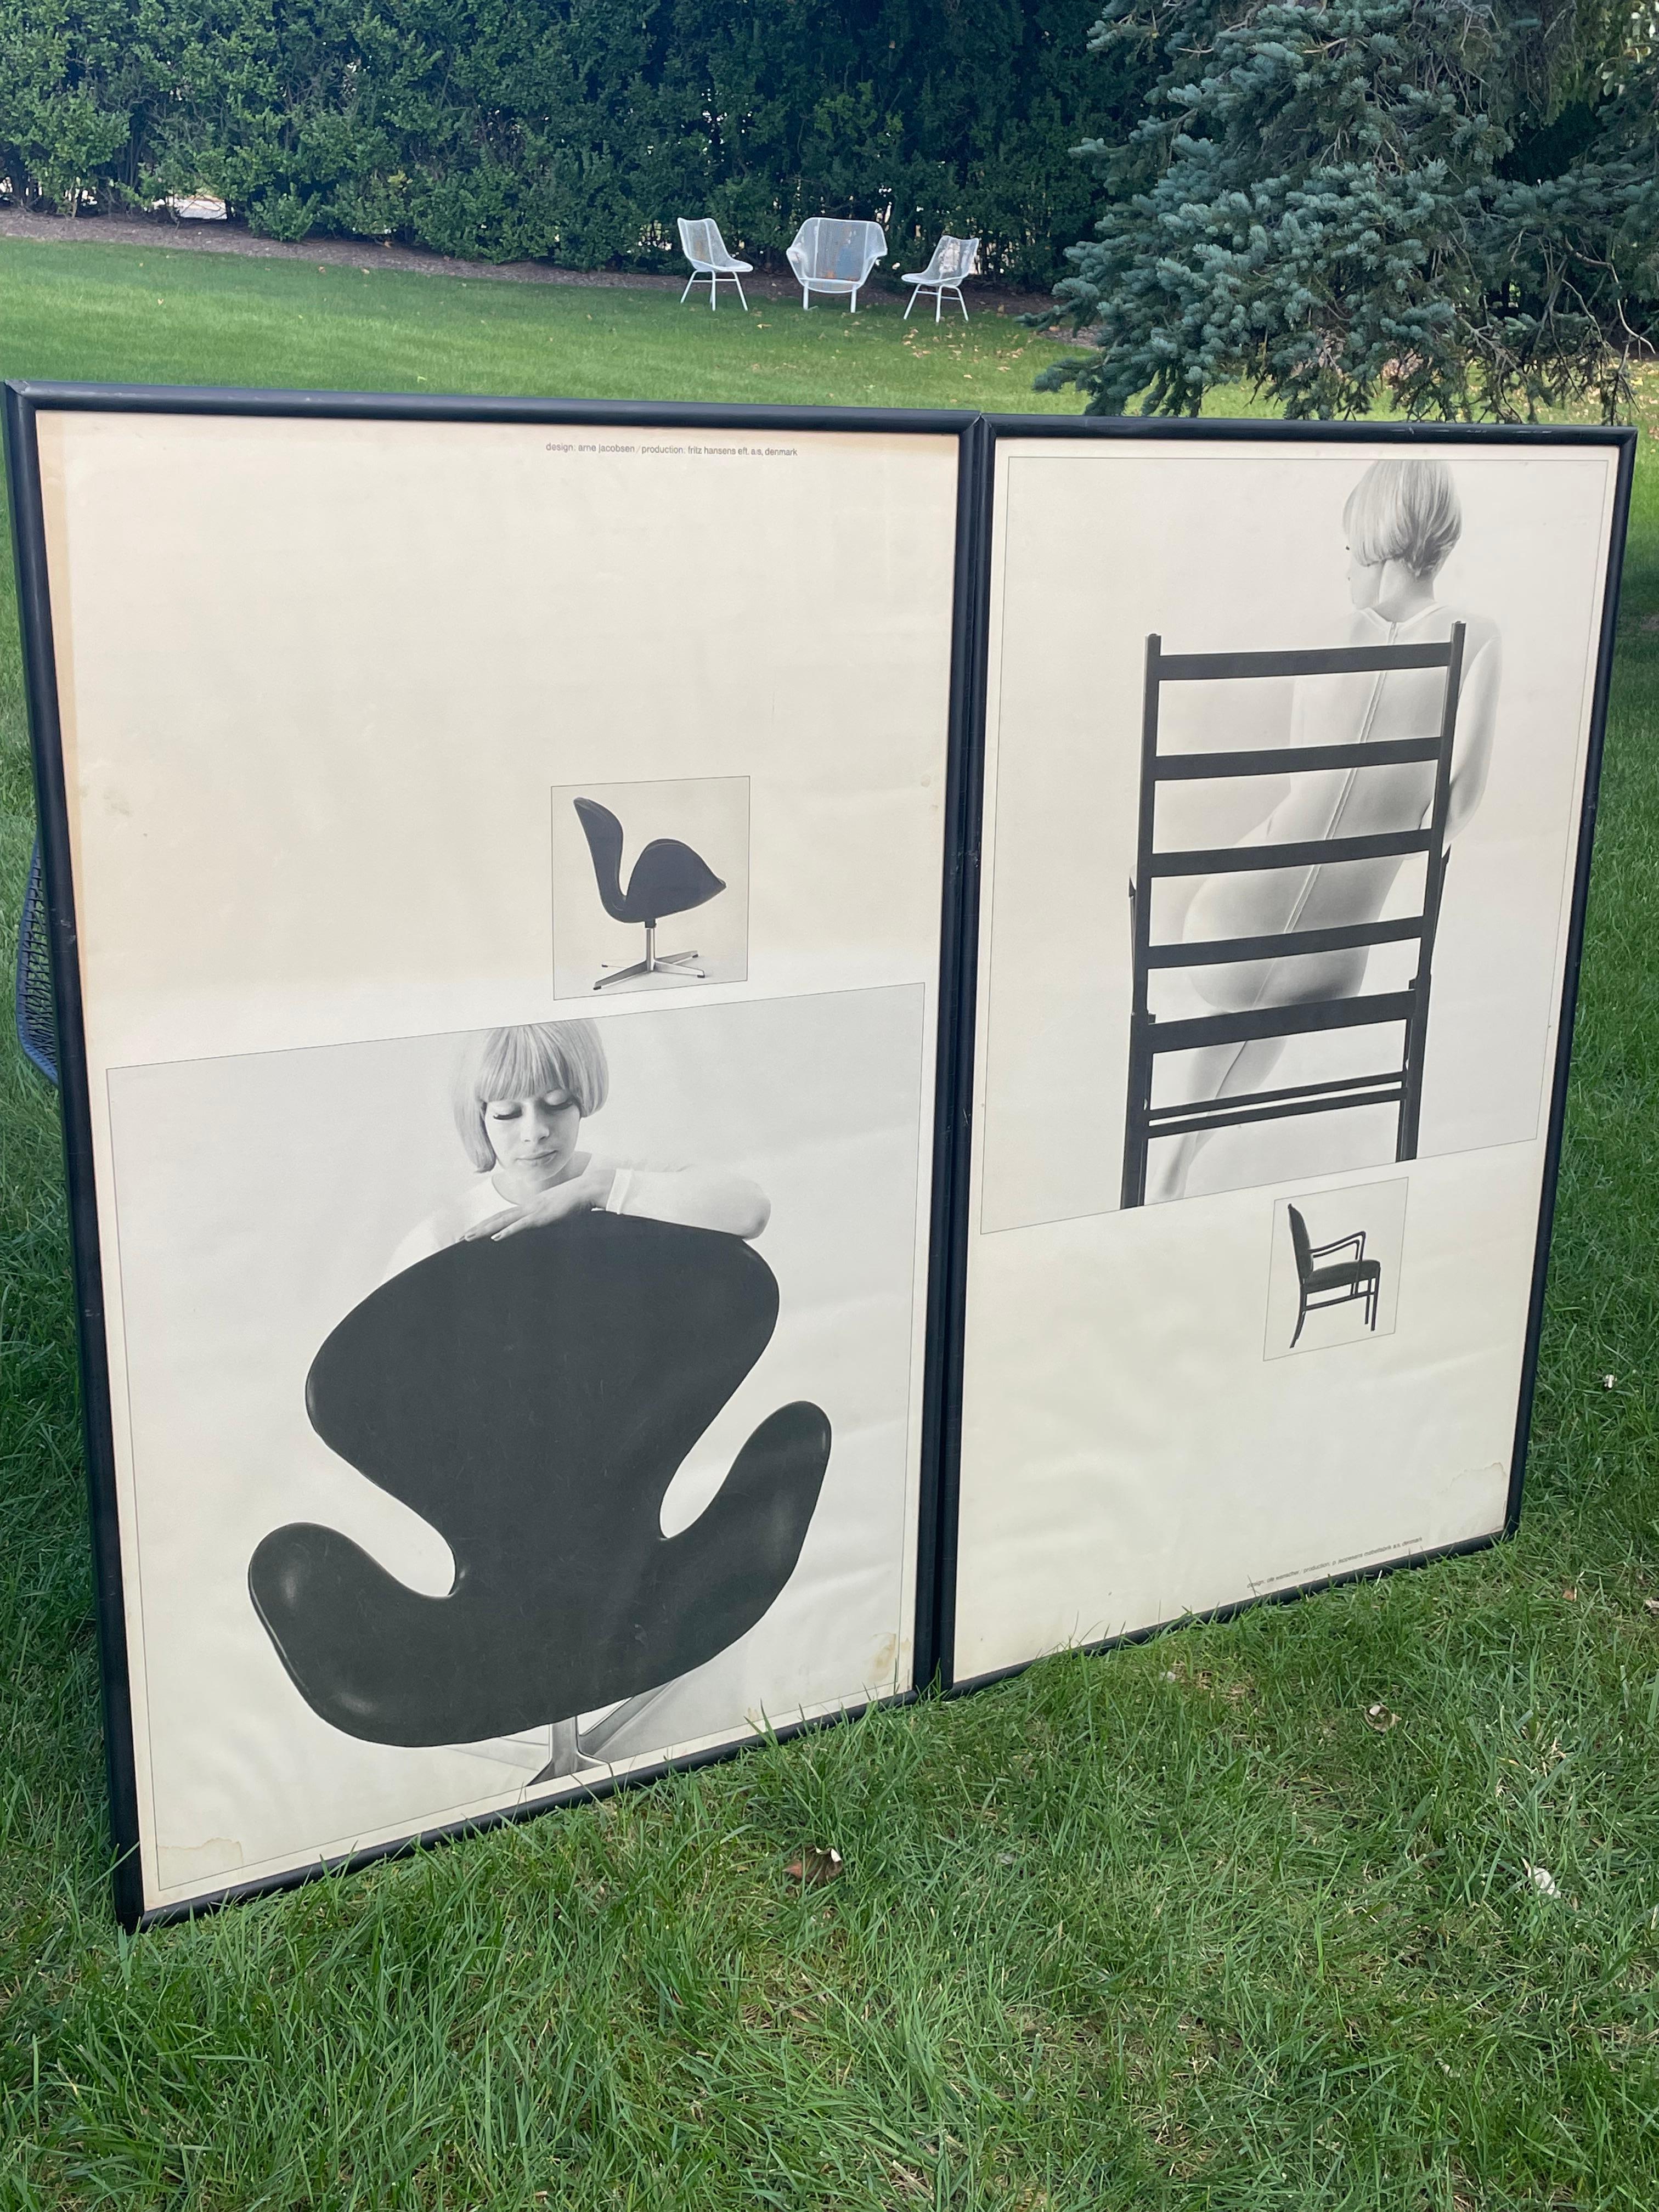 Paire de fabuleuses affiches publicitaires de design danois en noir et blanc photographiées par Paul Salomonsen.  L'une des affiches représente la célèbre chaise Swan d'Arne Jacobsen, conçue en 1958.  L'autre est un fauteuil conçu par Ole Wanscher,